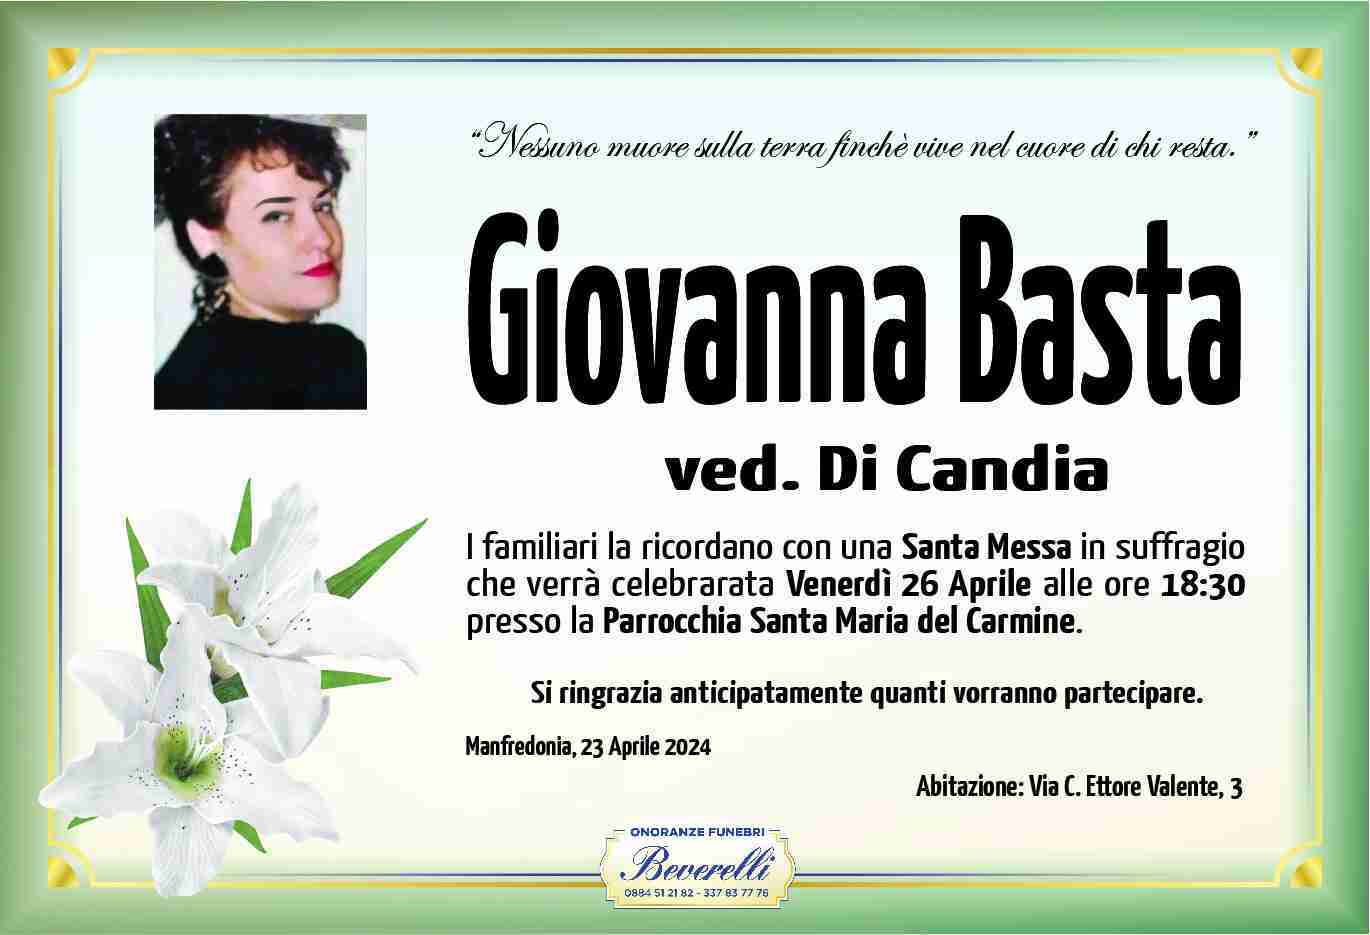 Giovanna Basta